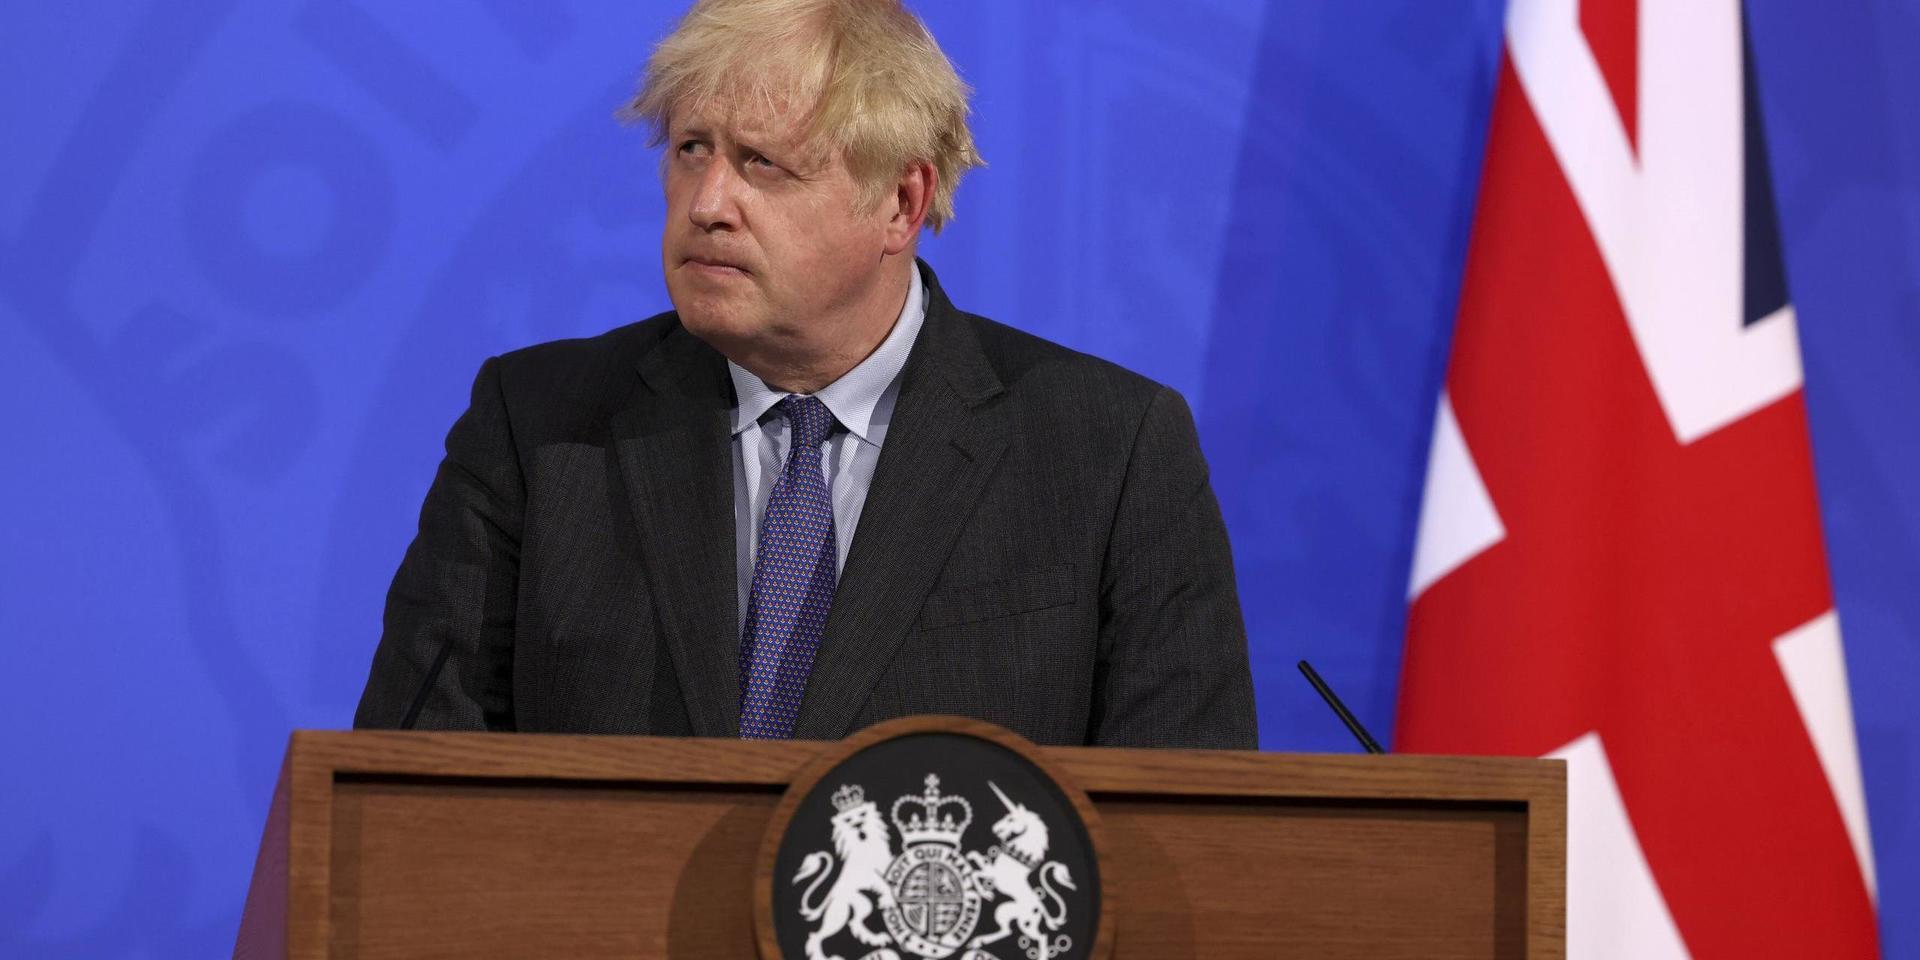 Storbritanniens premiärminister Boris Johnson gav under måndagen beskedet att landet kommer skjuta på återöppnandet.